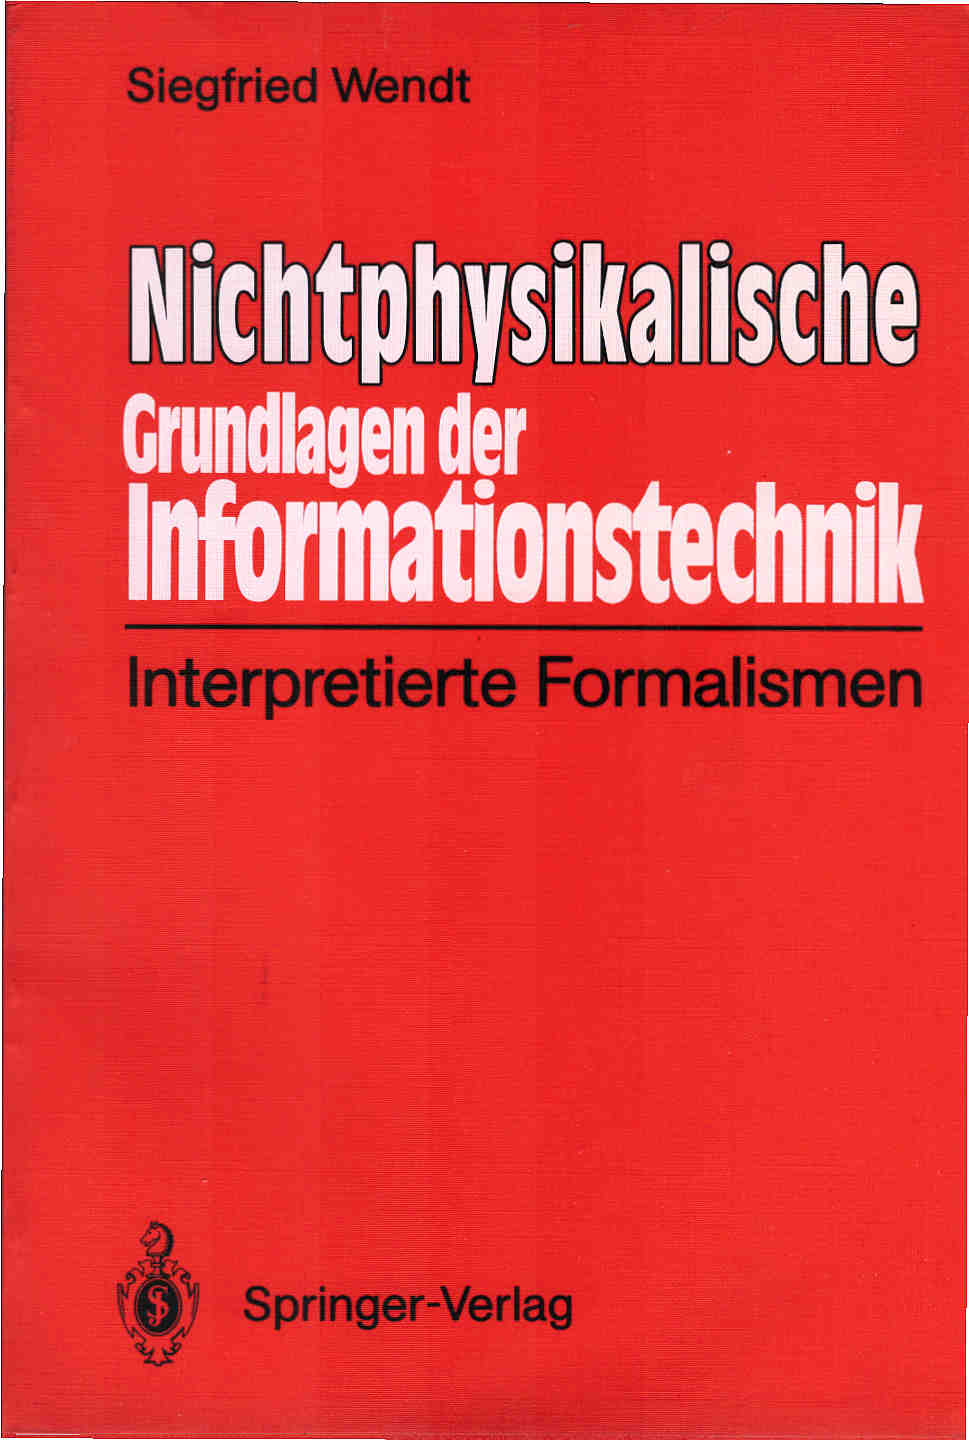 Nichtphysikalische Grundlagen der Informationstechnik : interpretierte Formalismen. - Wendt, Siegfried